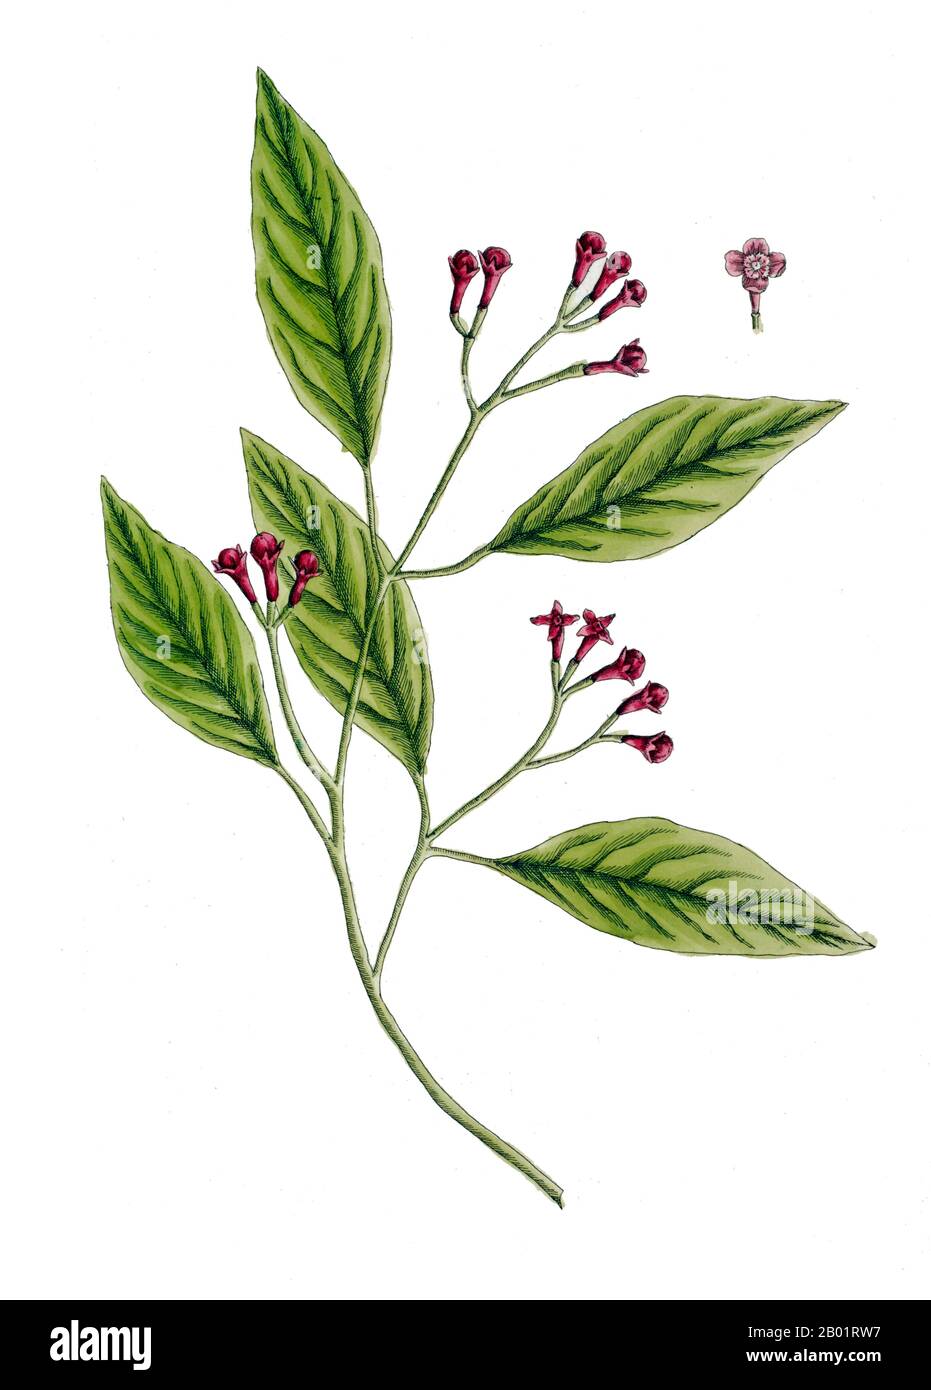 Indonésie/Royaume-Uni : 'The Clove, Carophyllus Aromaticus'. Illustration d'après une plaque d'Elizabeth Blackwell (3 février 1821 - 31 mai 1910), 1739. Les clous de girofle (Syzygium aromaticum) sont les bourgeons aromatiques séchés de fleurs d'un arbre de la famille des Myrtacées. Les clous de girofle sont originaires des îles Maluku en Indonésie et utilisés comme épice dans les cuisines du monde entier. Les clous de girofle sont récoltés principalement en Indonésie, Inde, Madagascar, Zanzibar, Pakistan, et Sri Lanka. Ils ont un effet engourdissant sur les tissus buccaux. Le clou de girofle est un arbre à feuilles persistantes qui pousse à une hauteur allant de 8-12 mètres. Banque D'Images